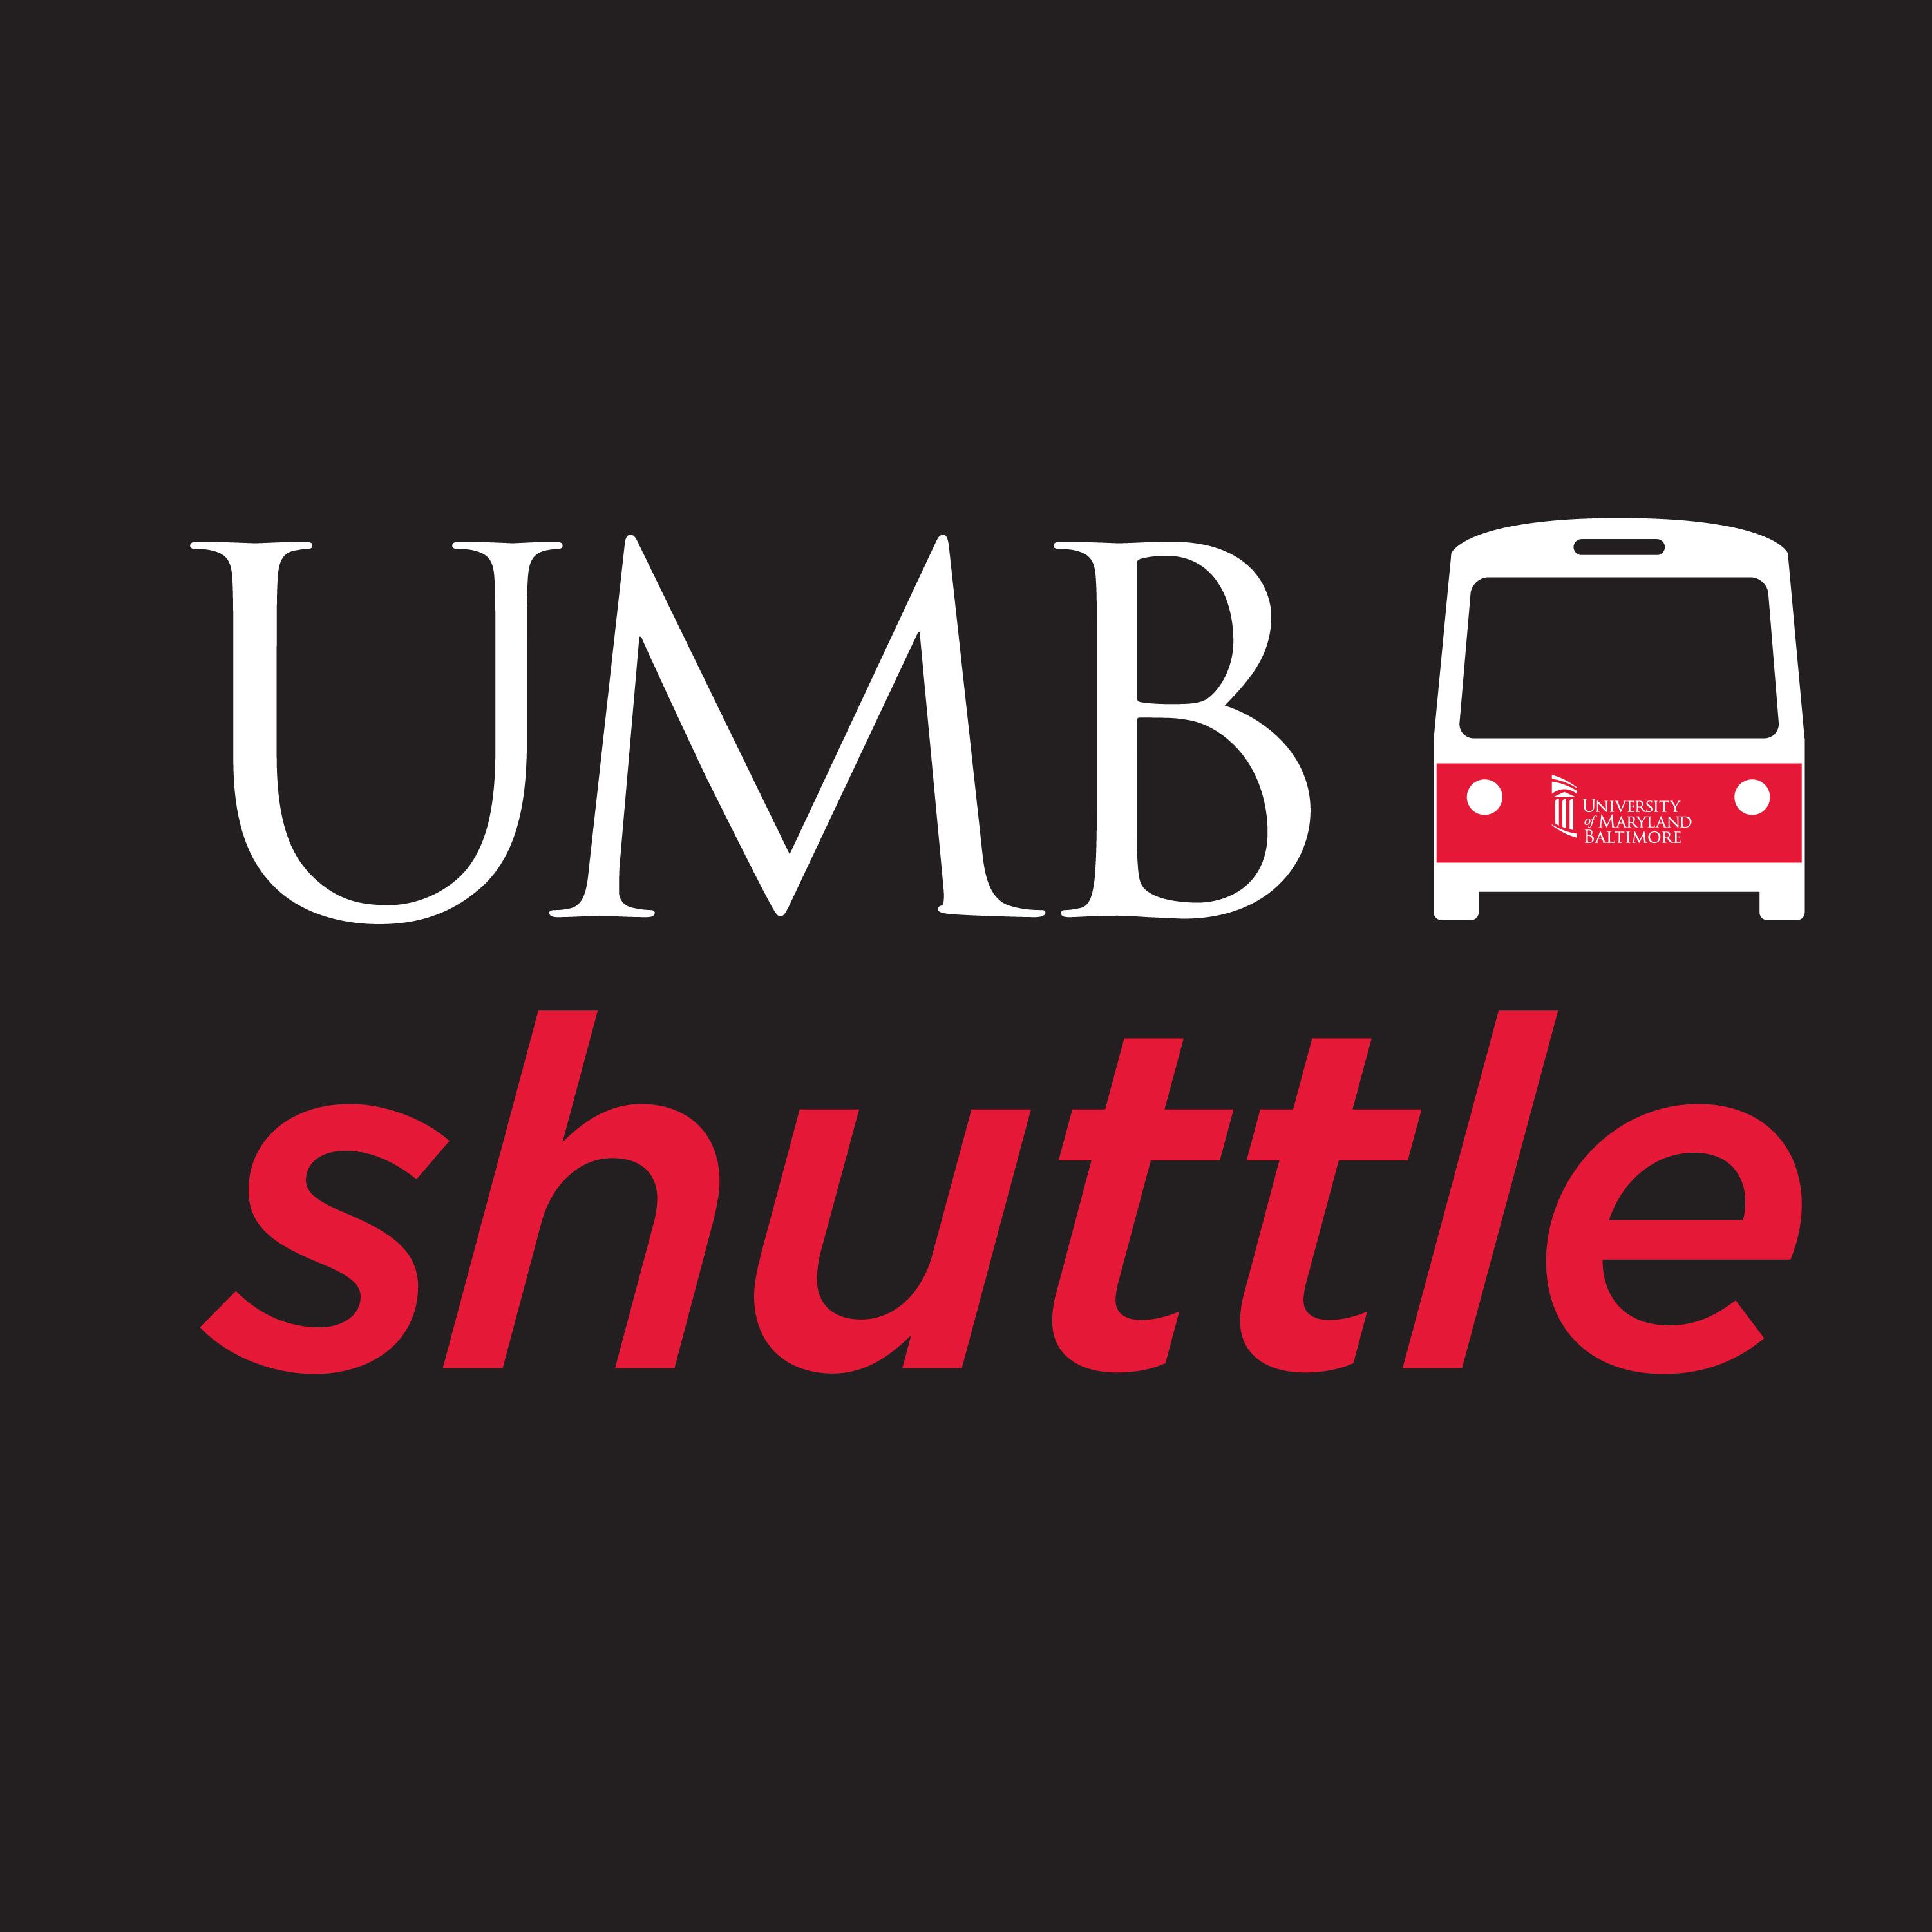 UMB shuttle